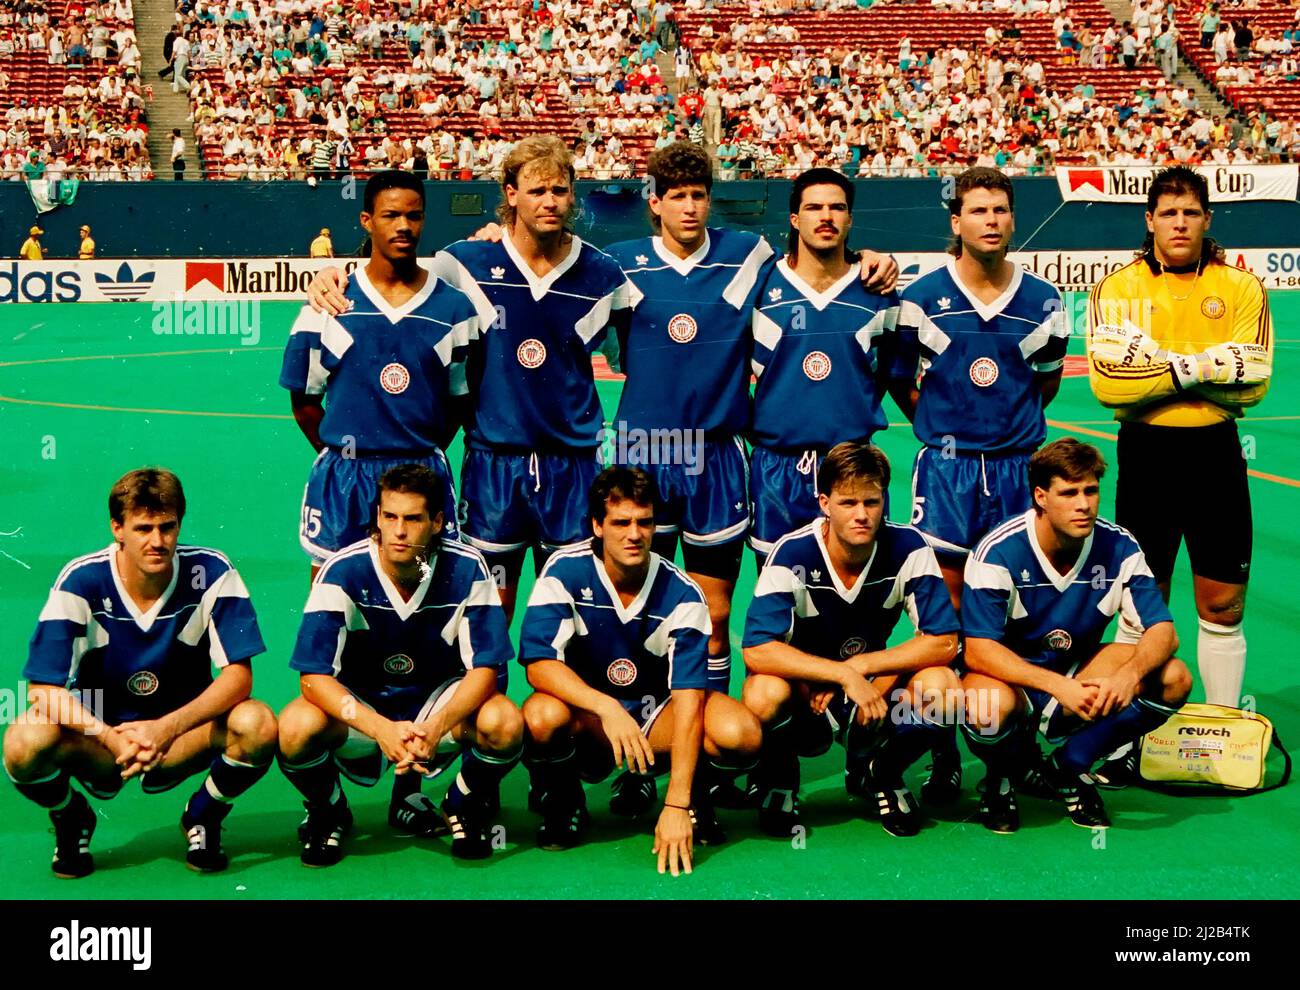 Équipe nationale américaine masculine à la Marlboro Cup 1990 Banque D'Images